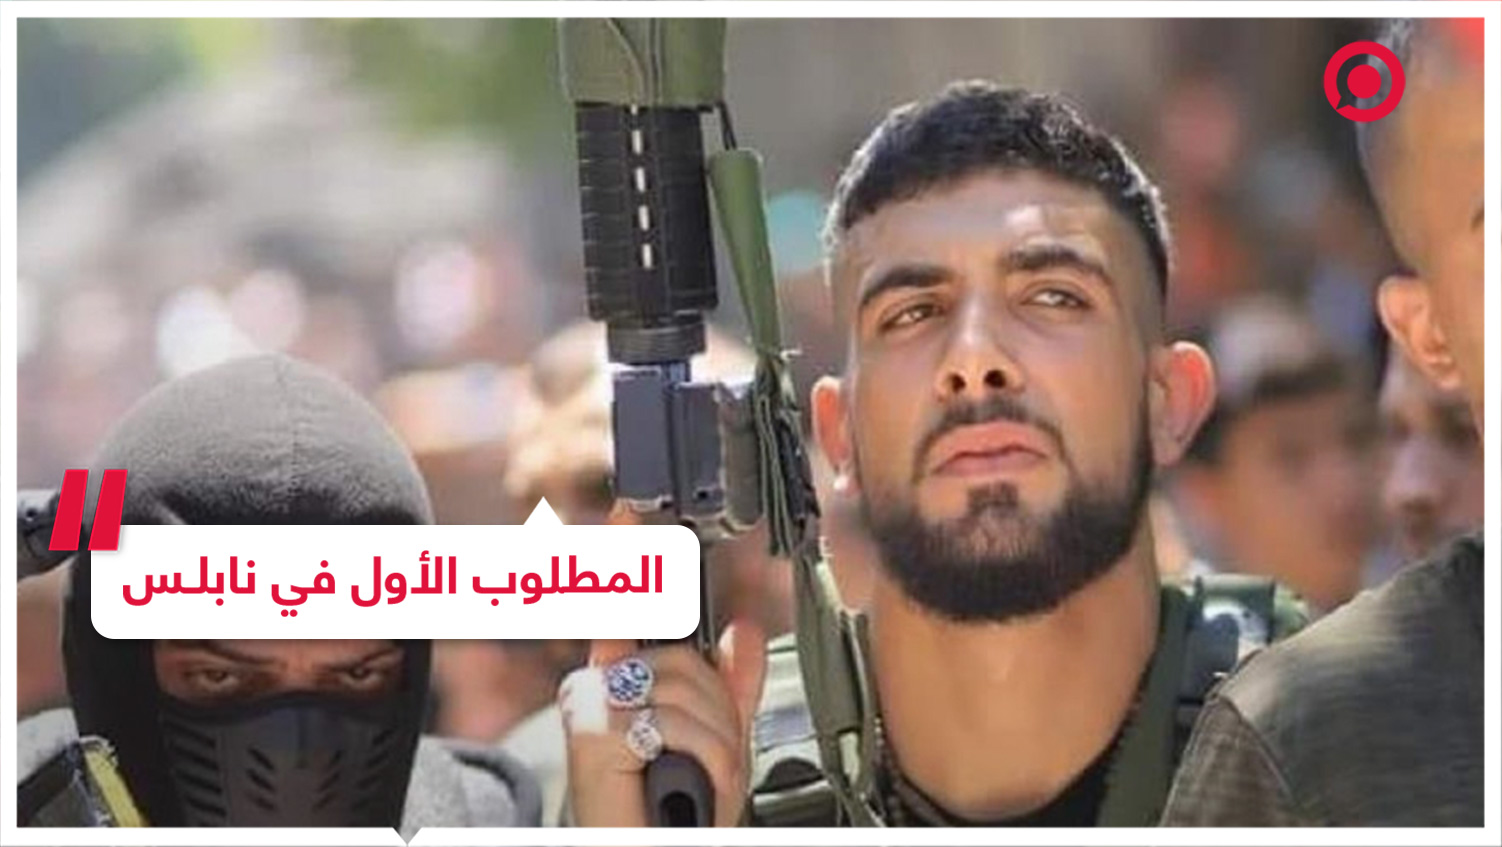 تسجيل صوتي لوصية إبراهيم النابلسي أثناء محاصرته من قبل الجيش الإسرائيلي